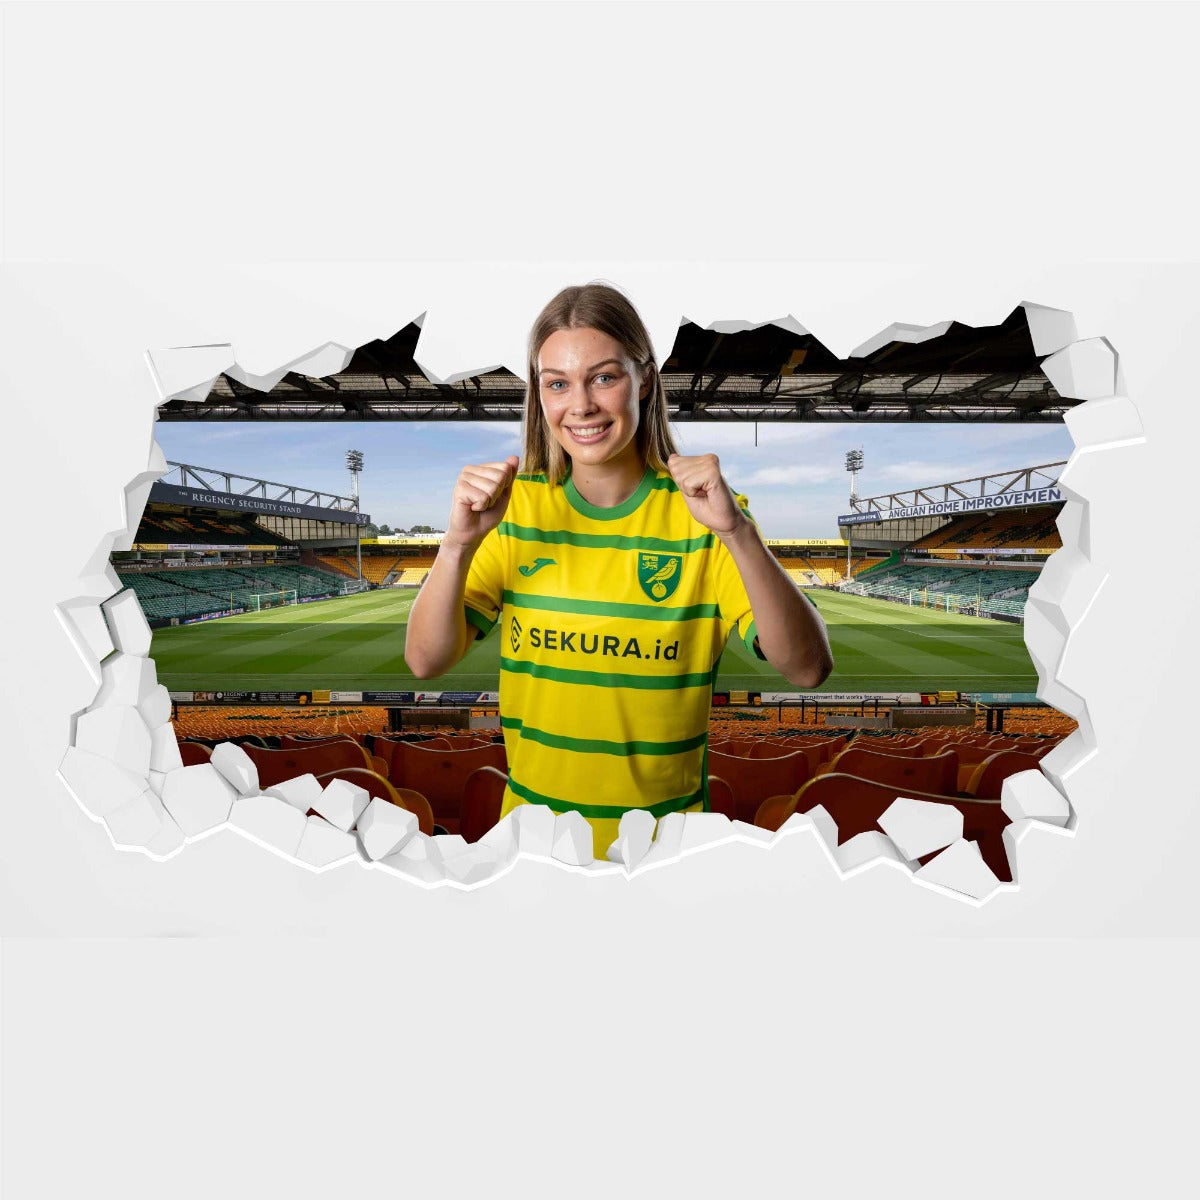 Norwich City FC - Alice Parker 23-24 Player Broken Wall Sicker